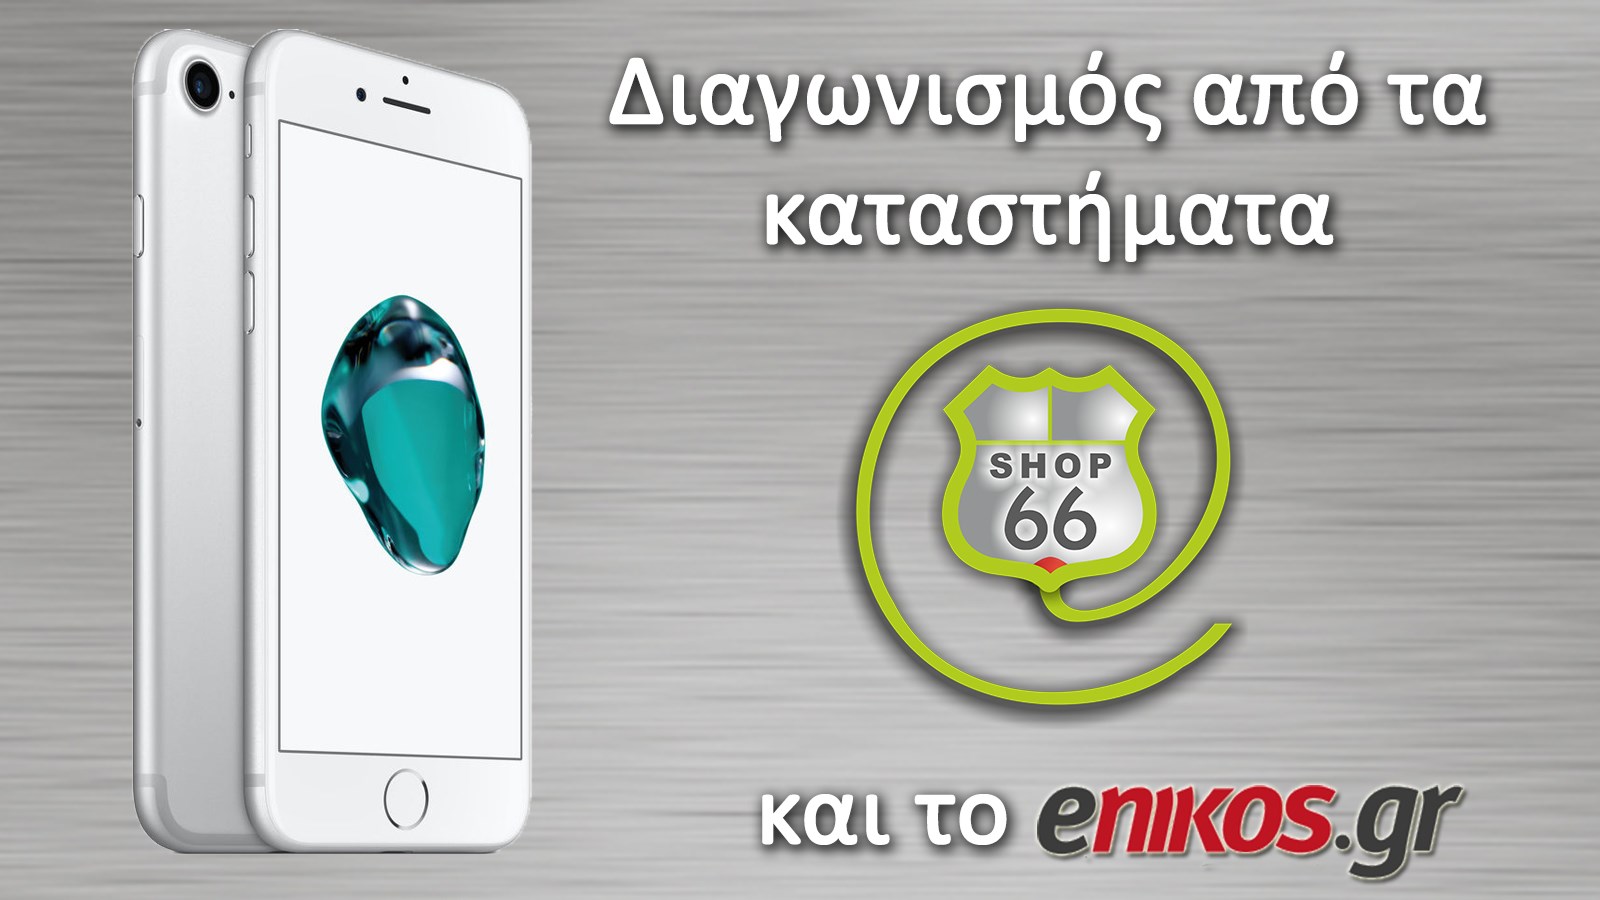 Μεγάλος διαγωνισμός από το enikos.gr με έπαθλο iPhone 7